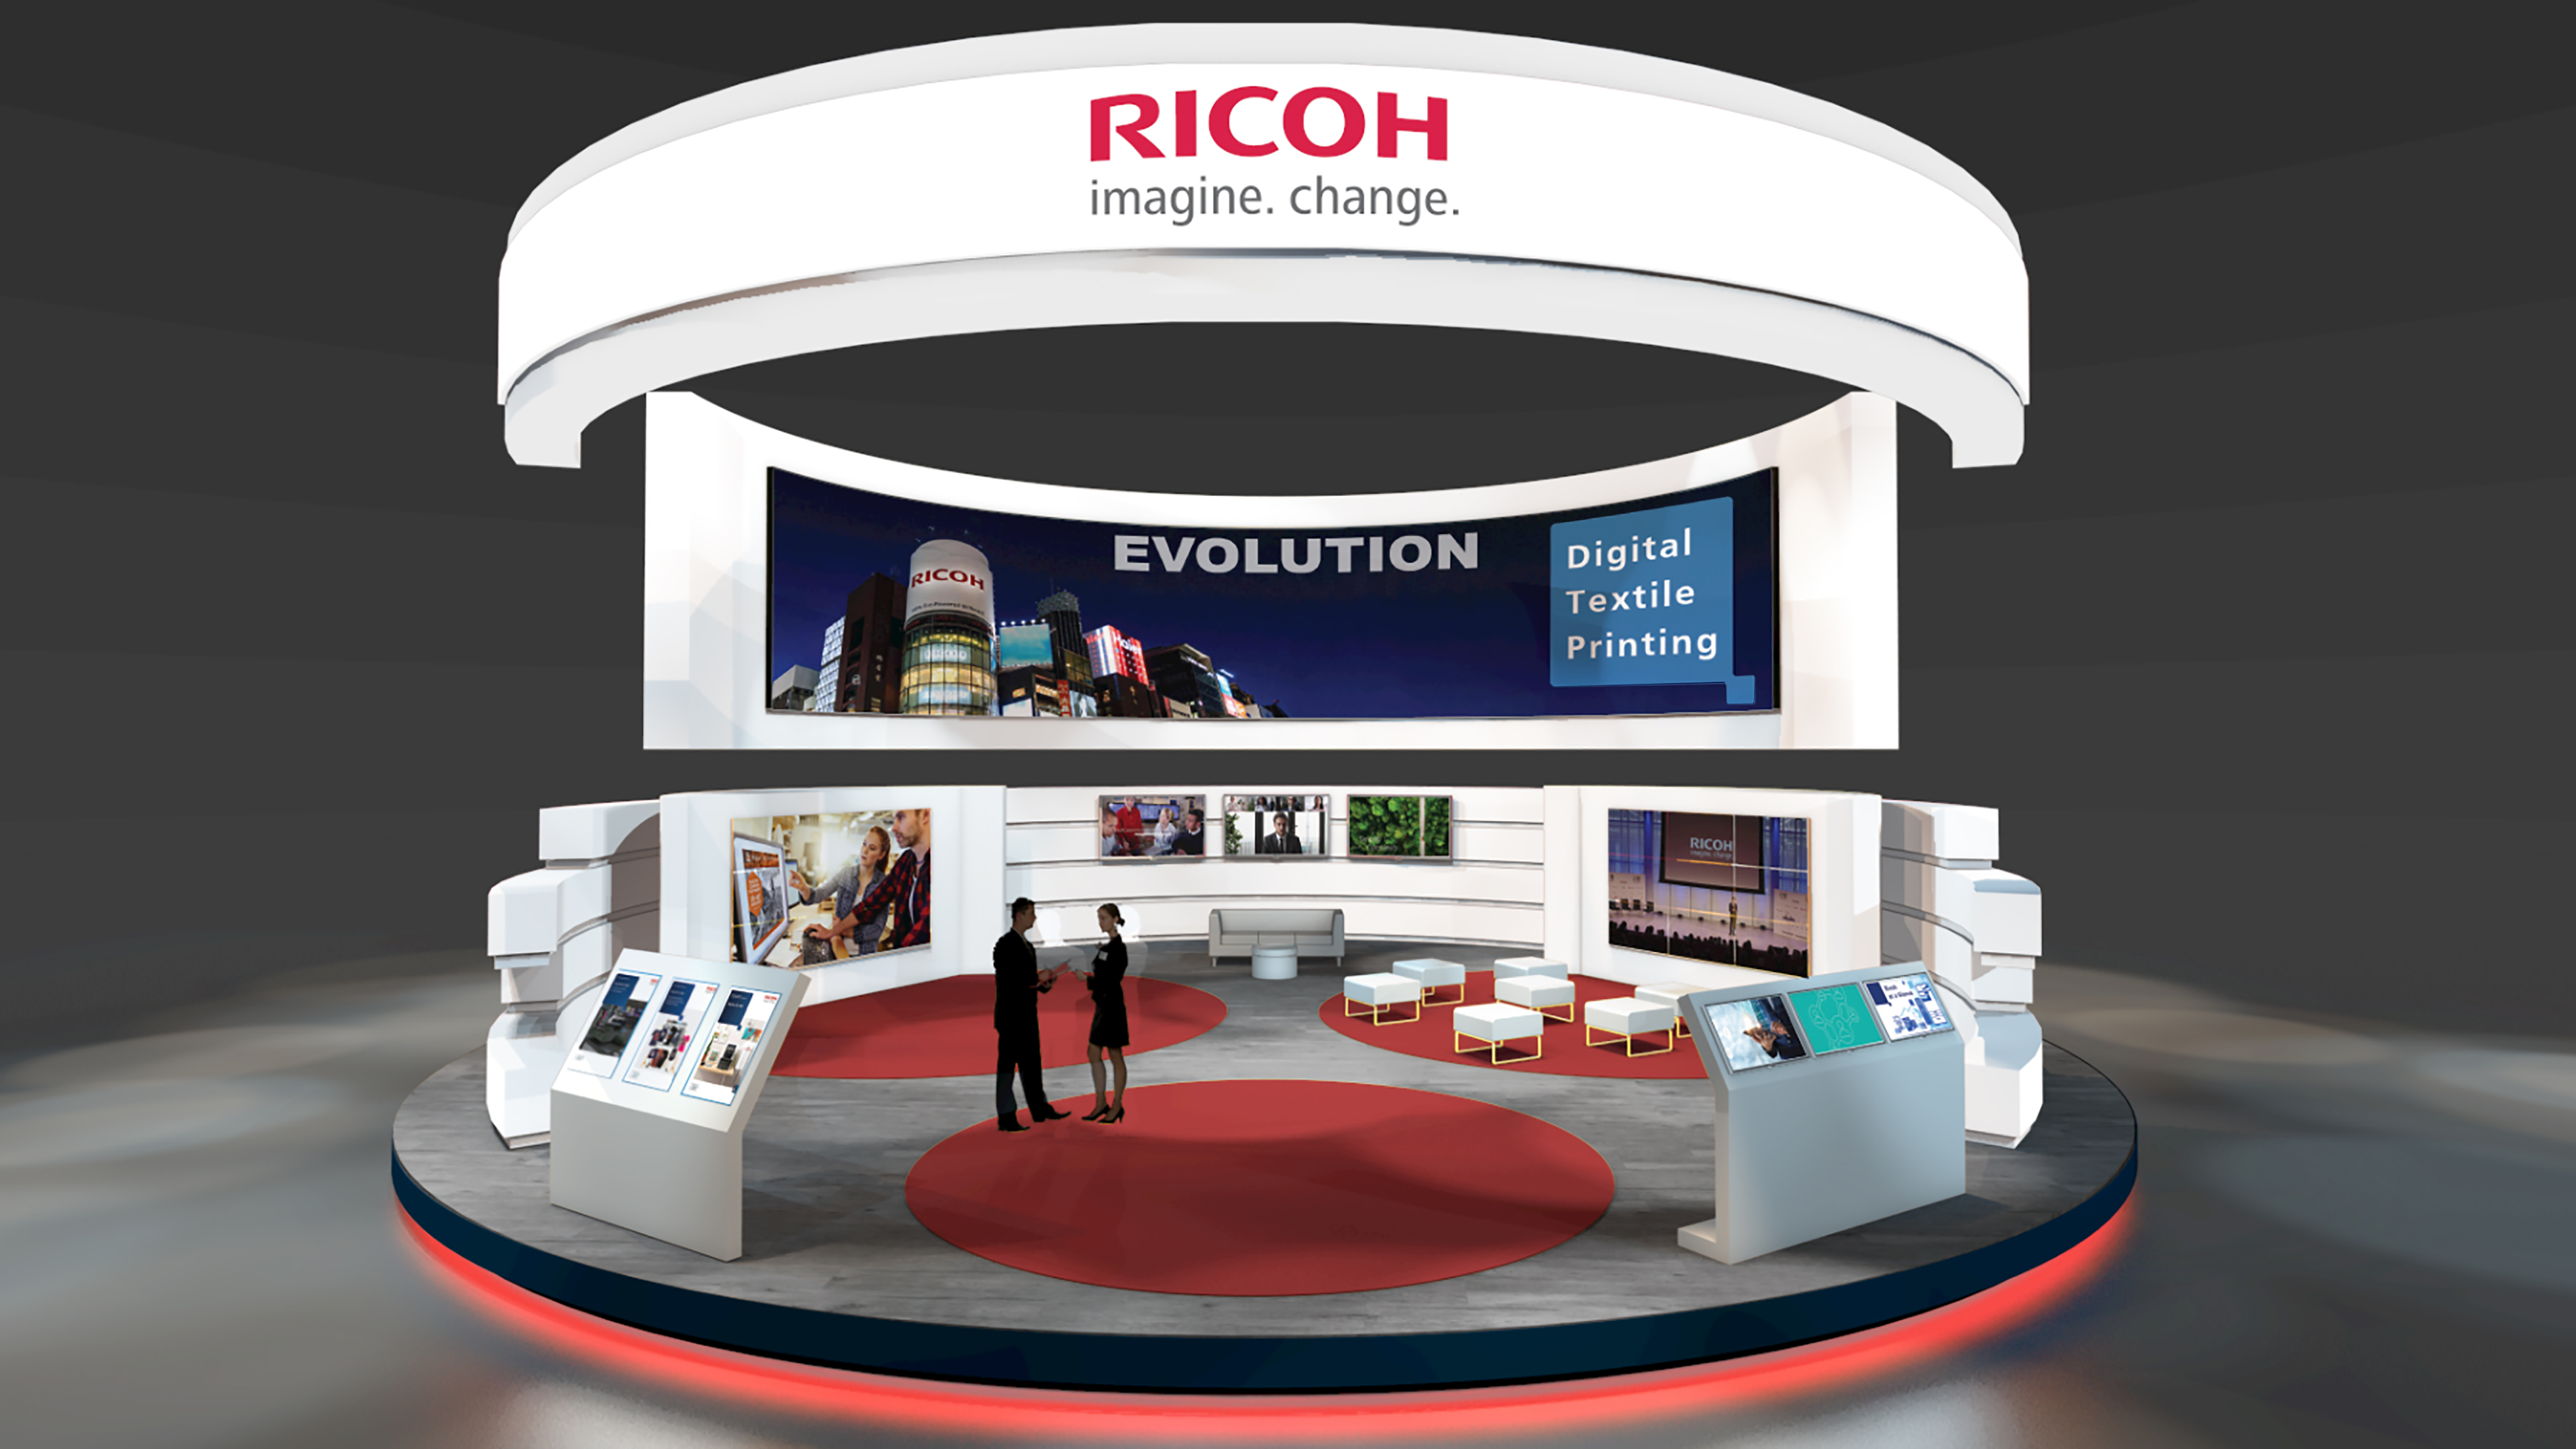 Společnost Ricoh, sponzor akce Innovate 2021, představila pokroky v oblasti digitálního tisku.